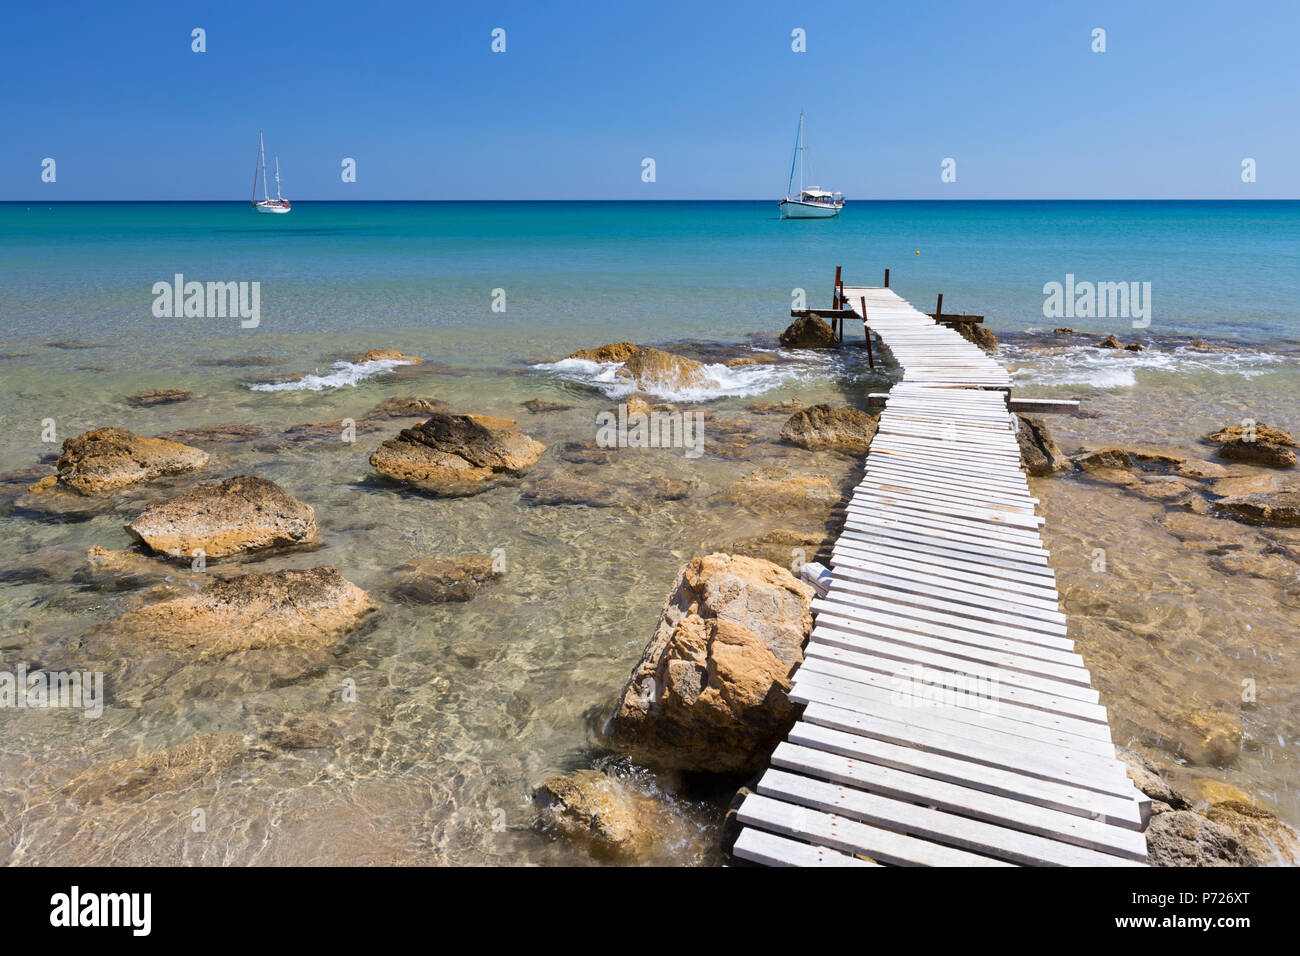 Il molo di legno chiaro e turchese del mare con barche a Provatas spiaggia, Milos, Cicladi, il Mare Egeo e le isole greche, Grecia, Europa Foto Stock